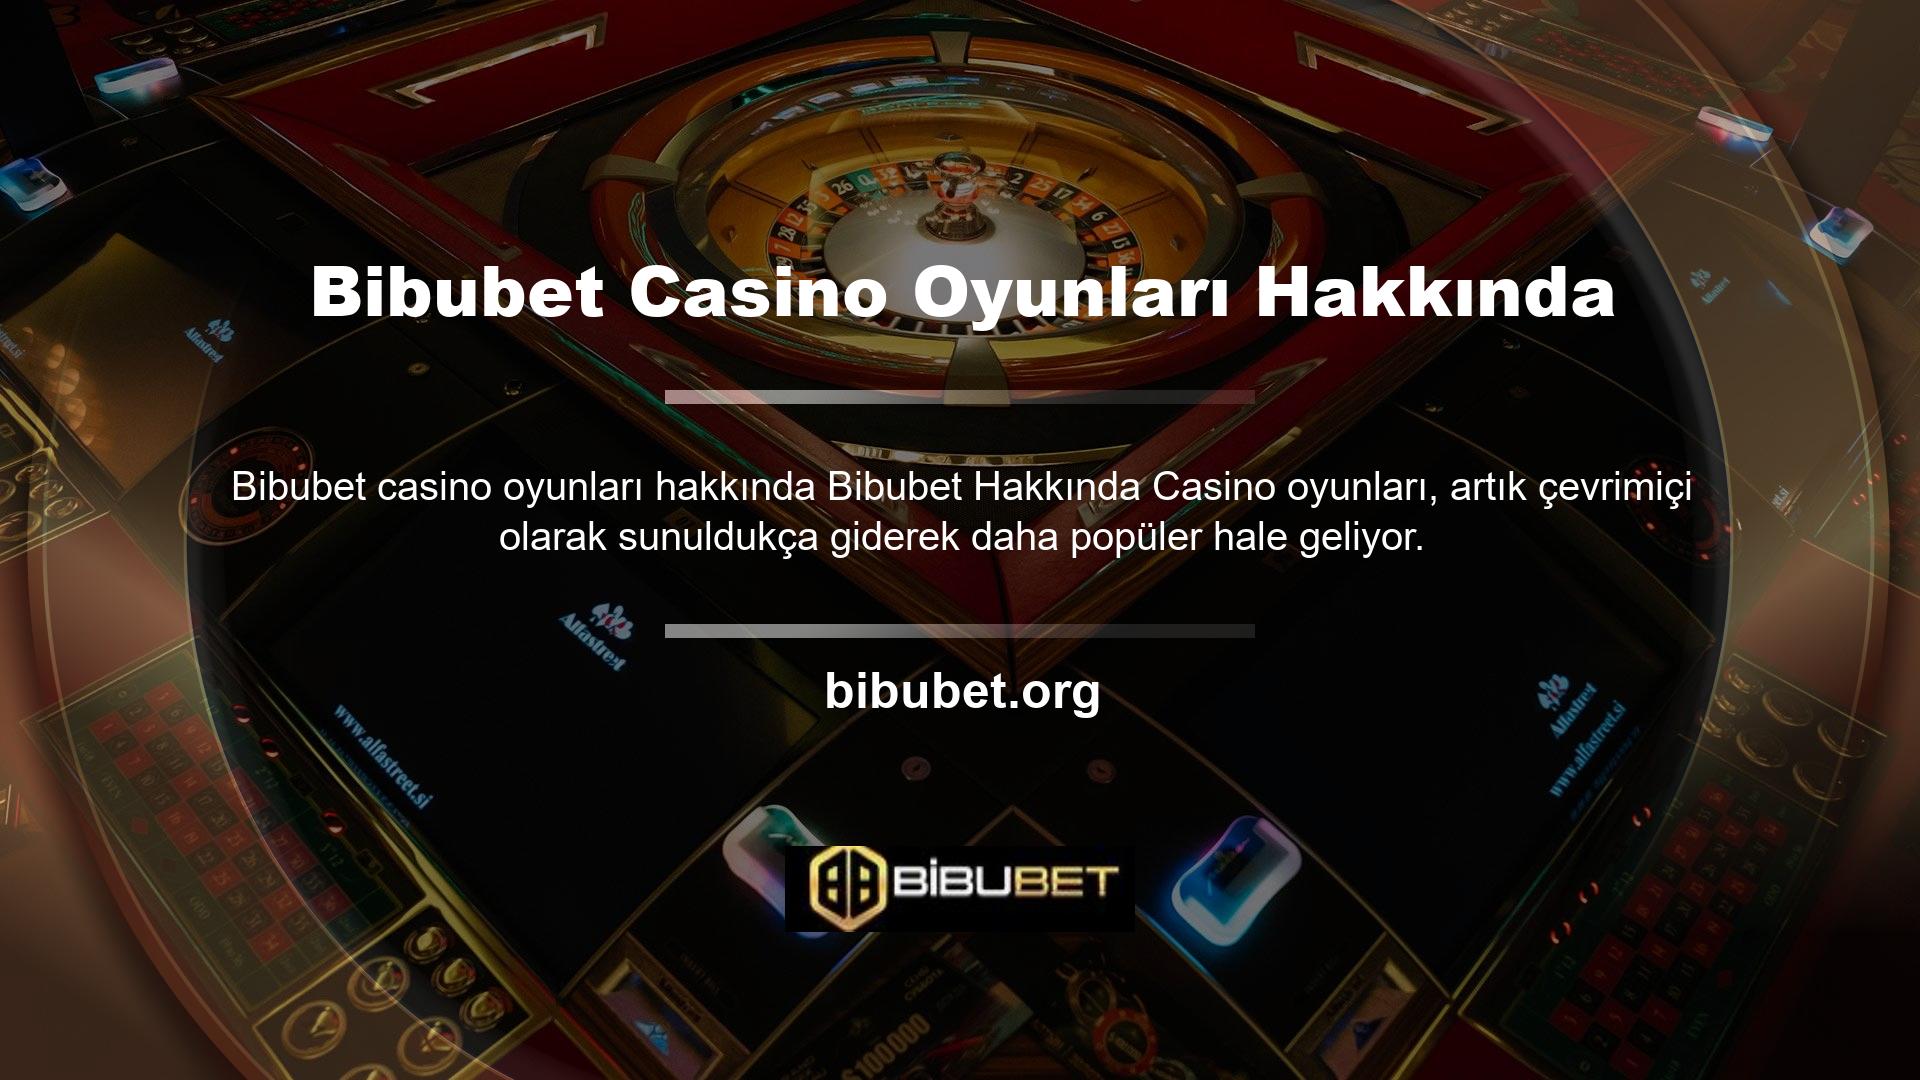 Casino lobilerinde oyuncular, zaman ve mekan sorunlarının yanı sıra bütçe sorunlarıyla da karşılaşırlar